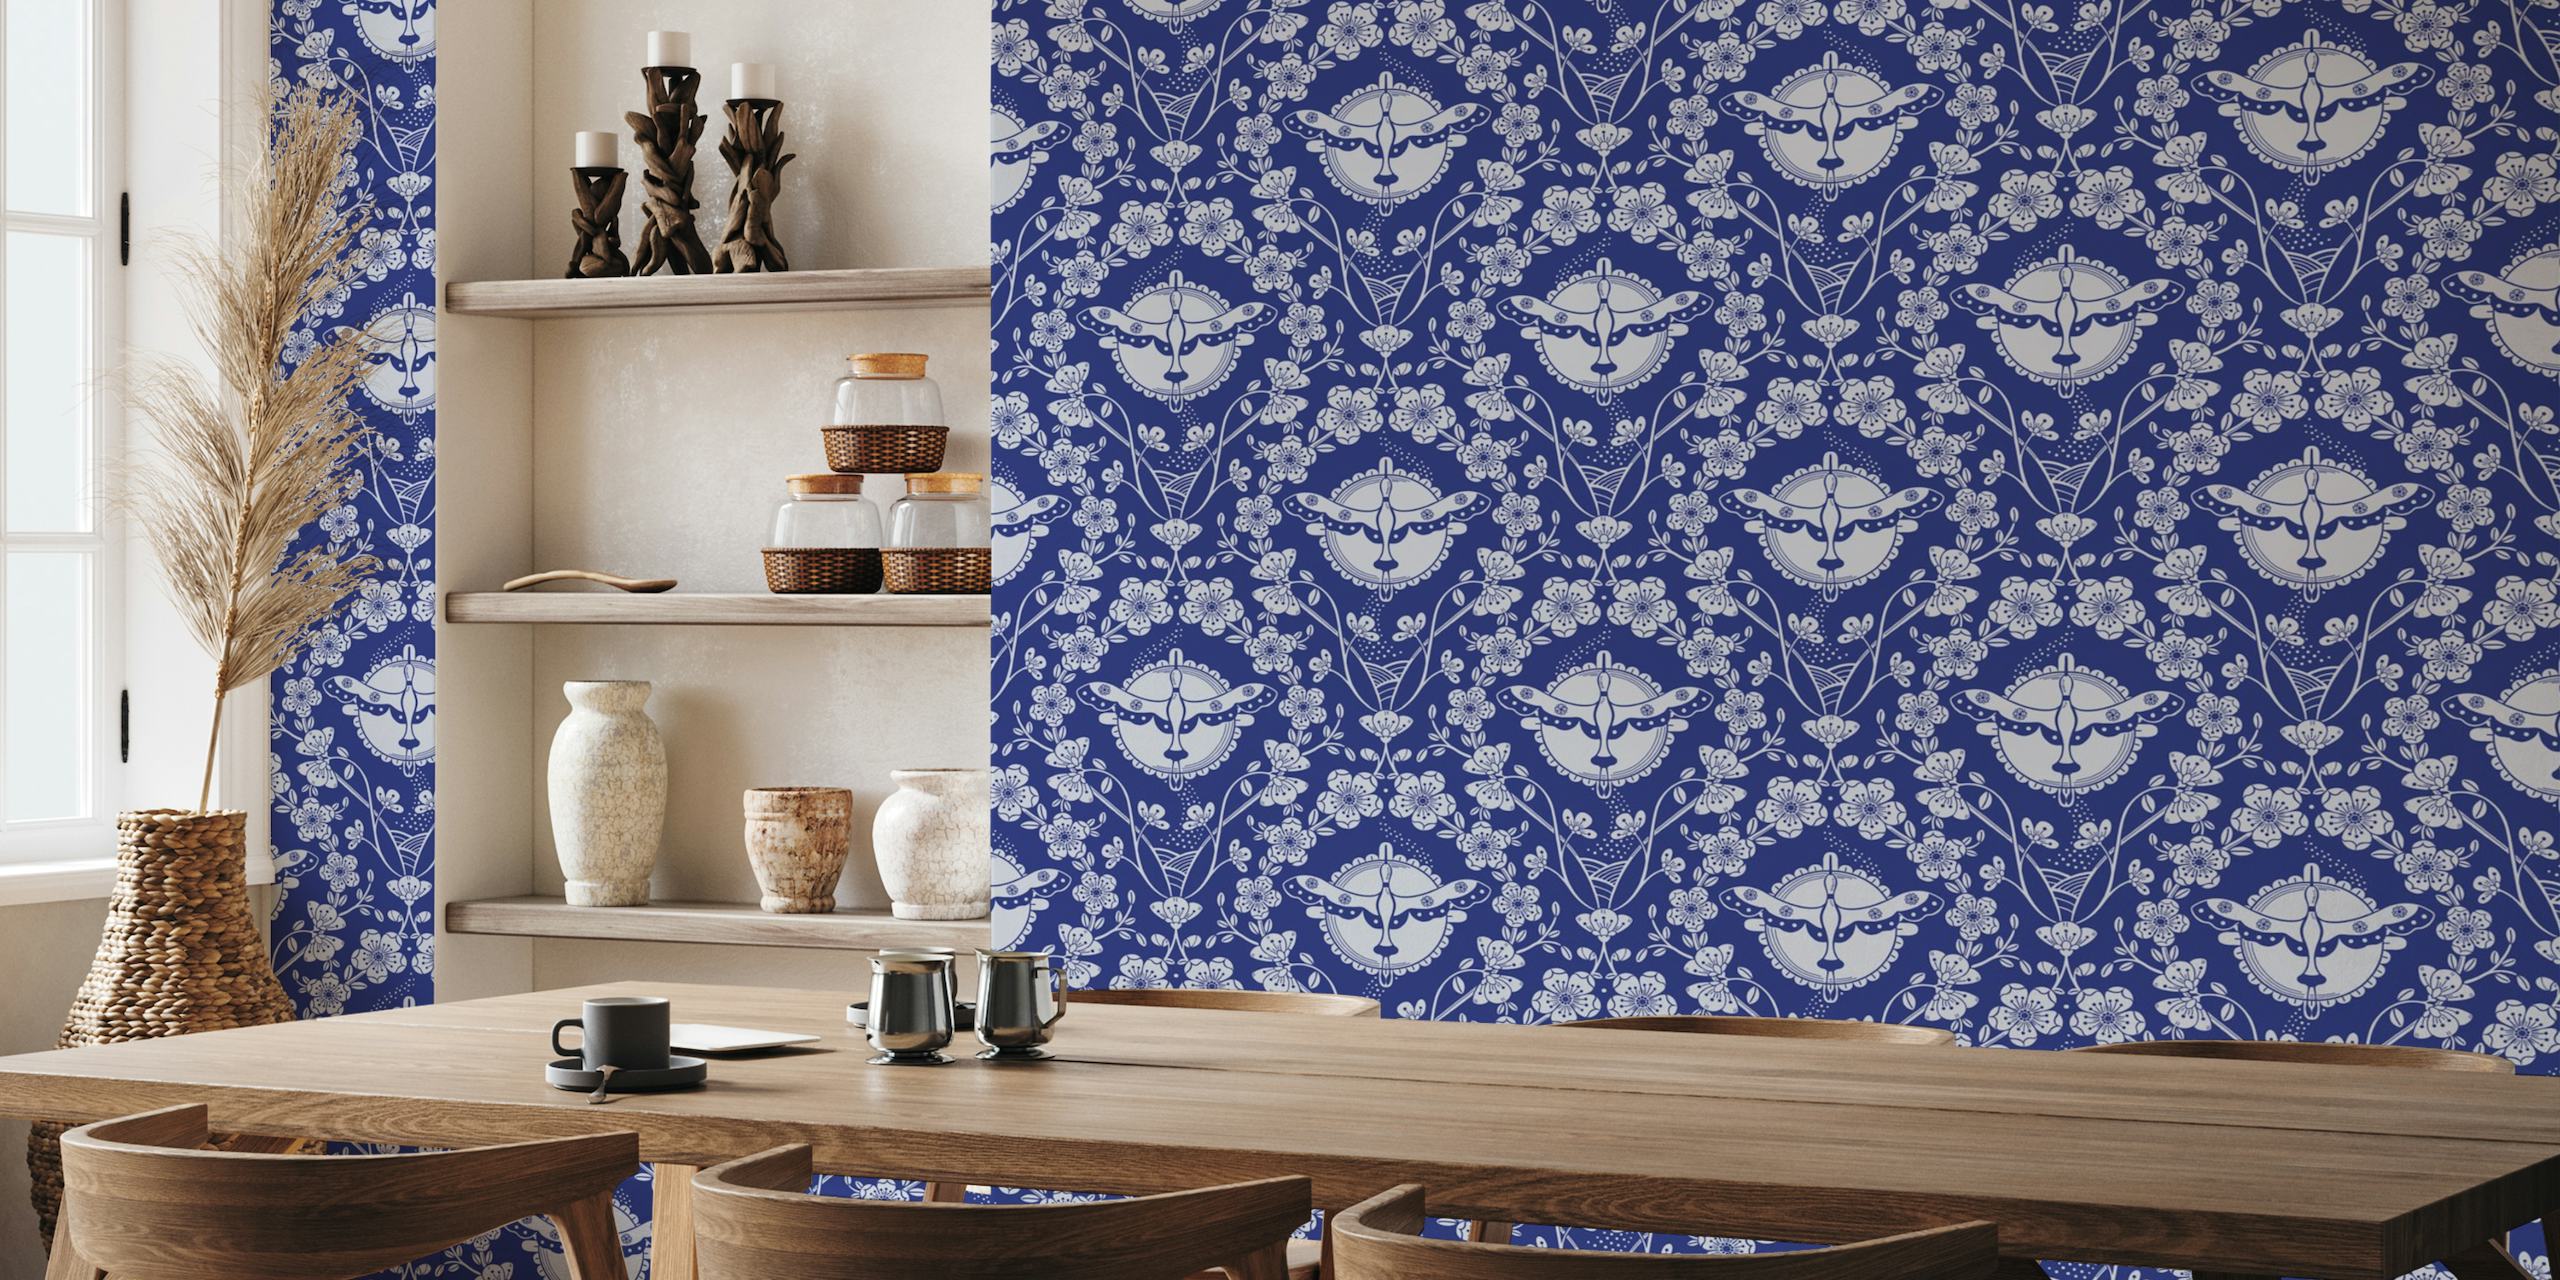 Mural de parede azul marinho representando cegonhas e padrões florais em um design simétrico